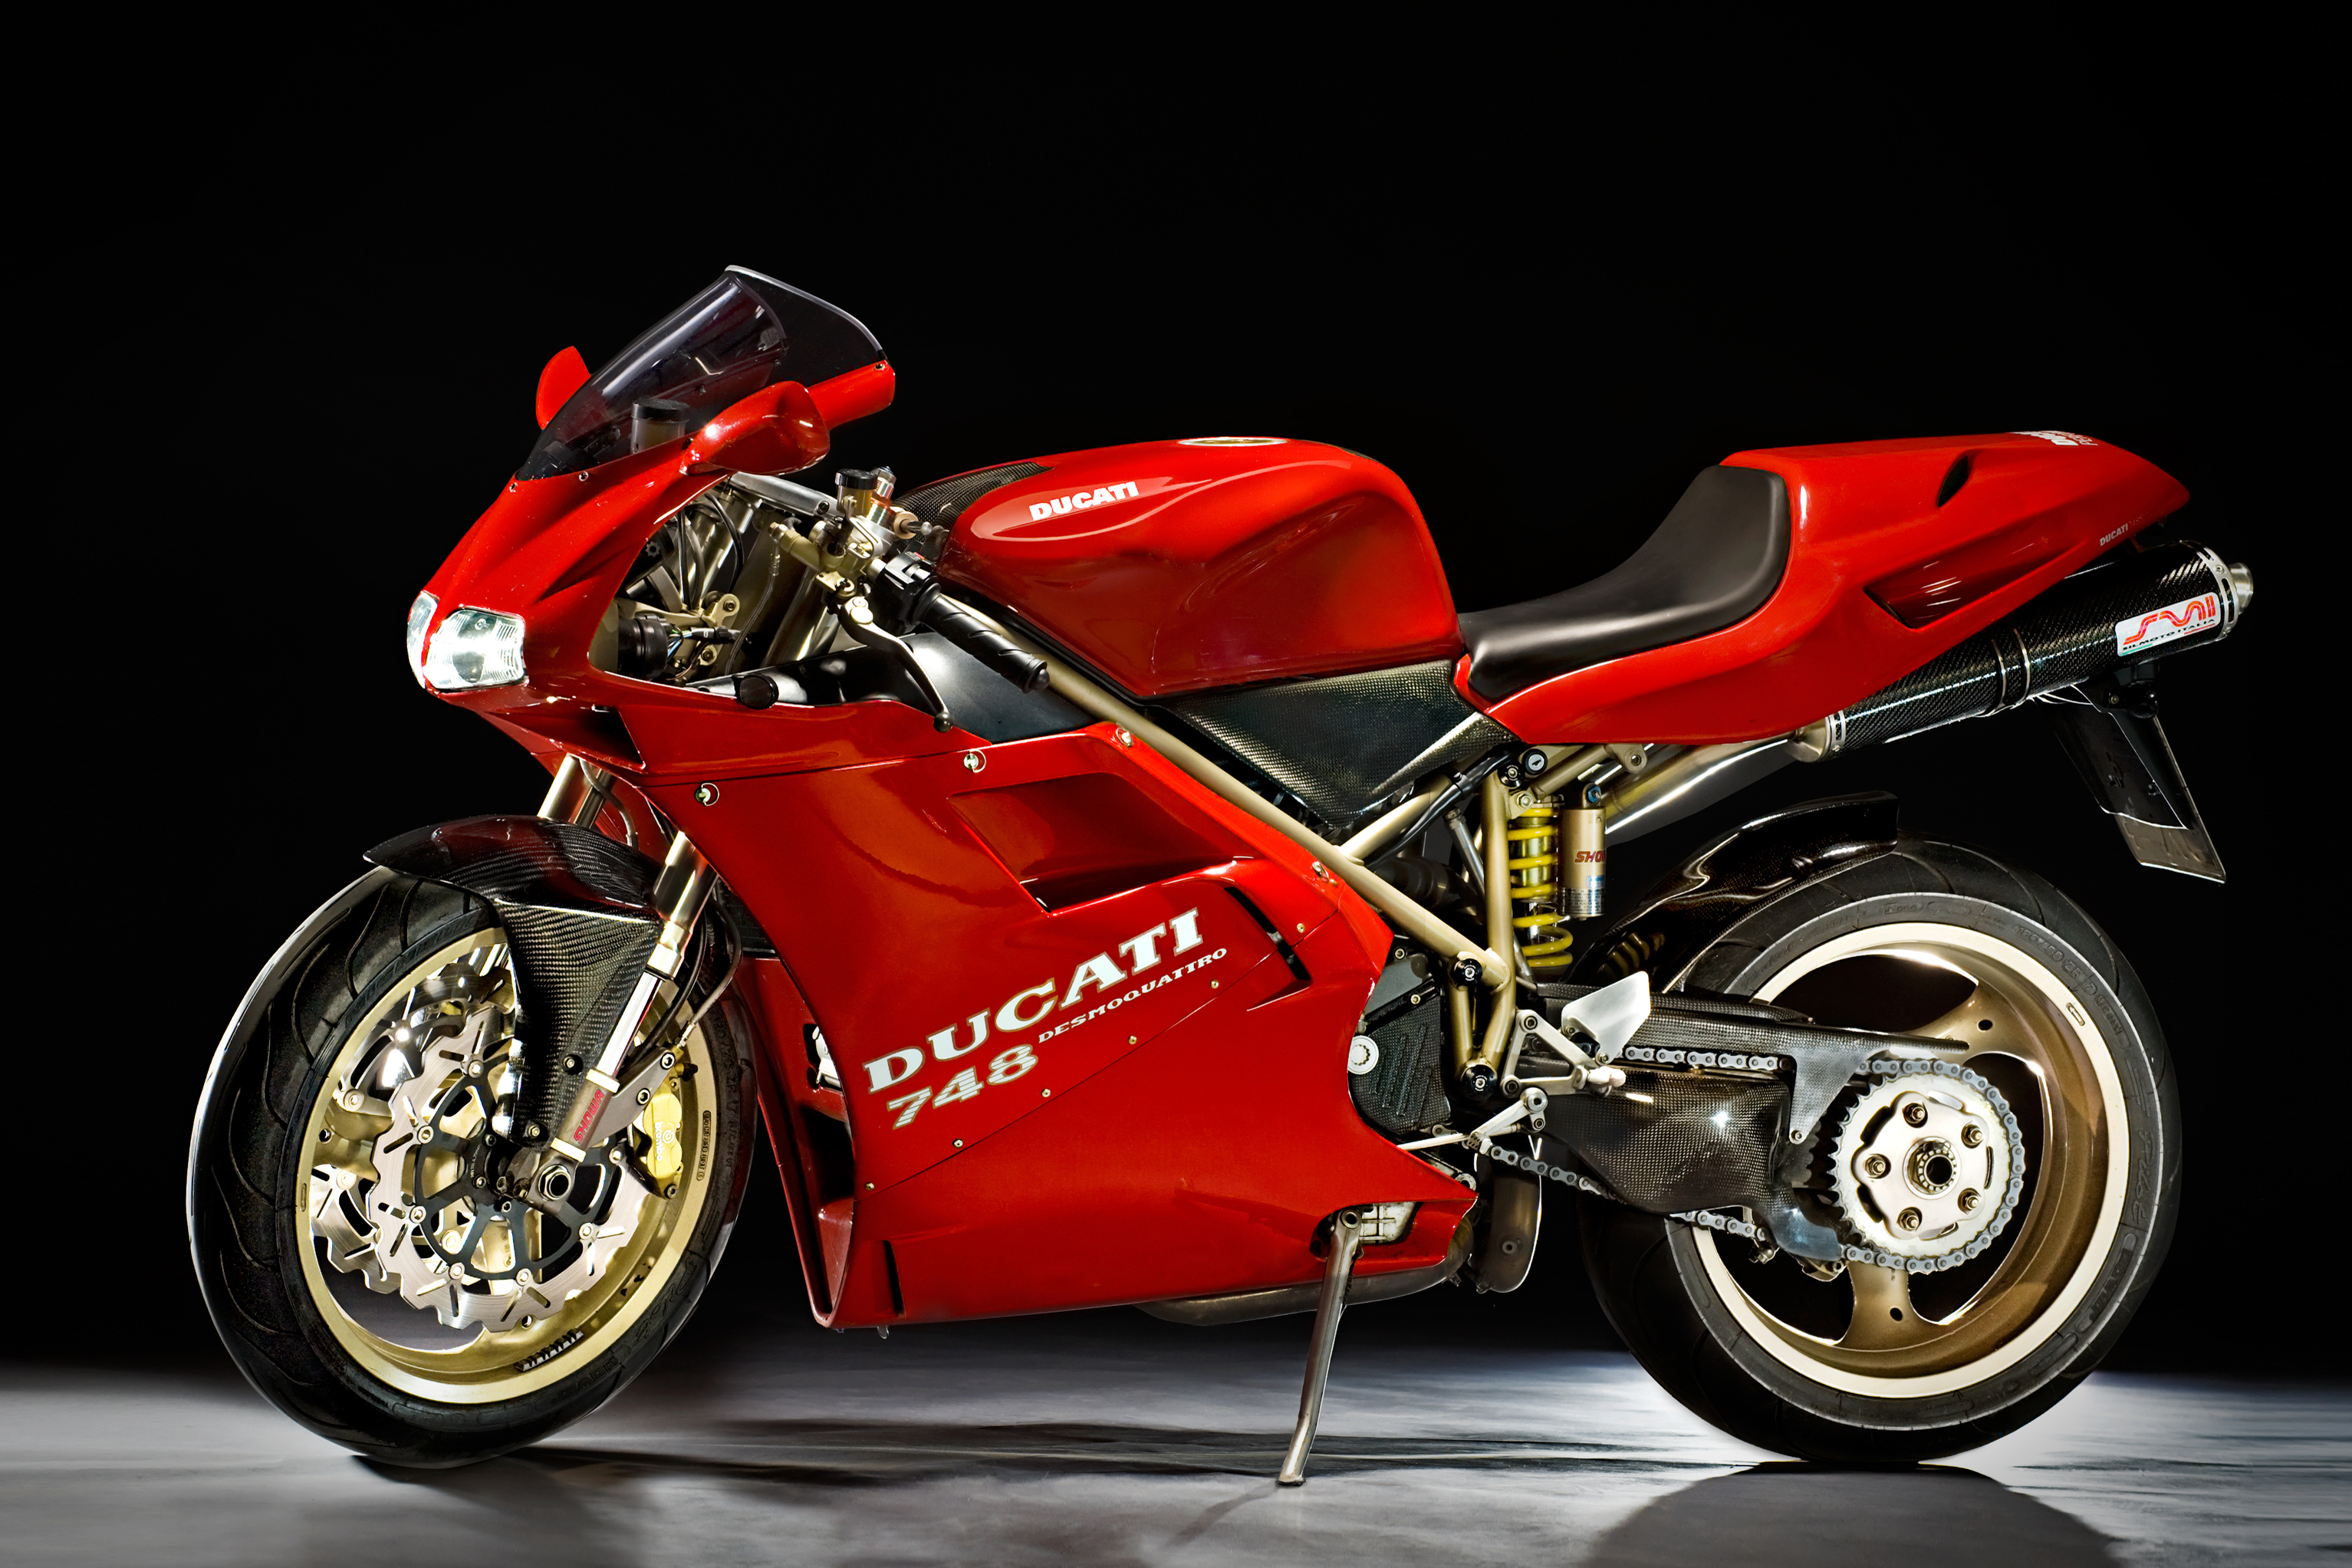 Ducati 748 R 2002 photo - 1